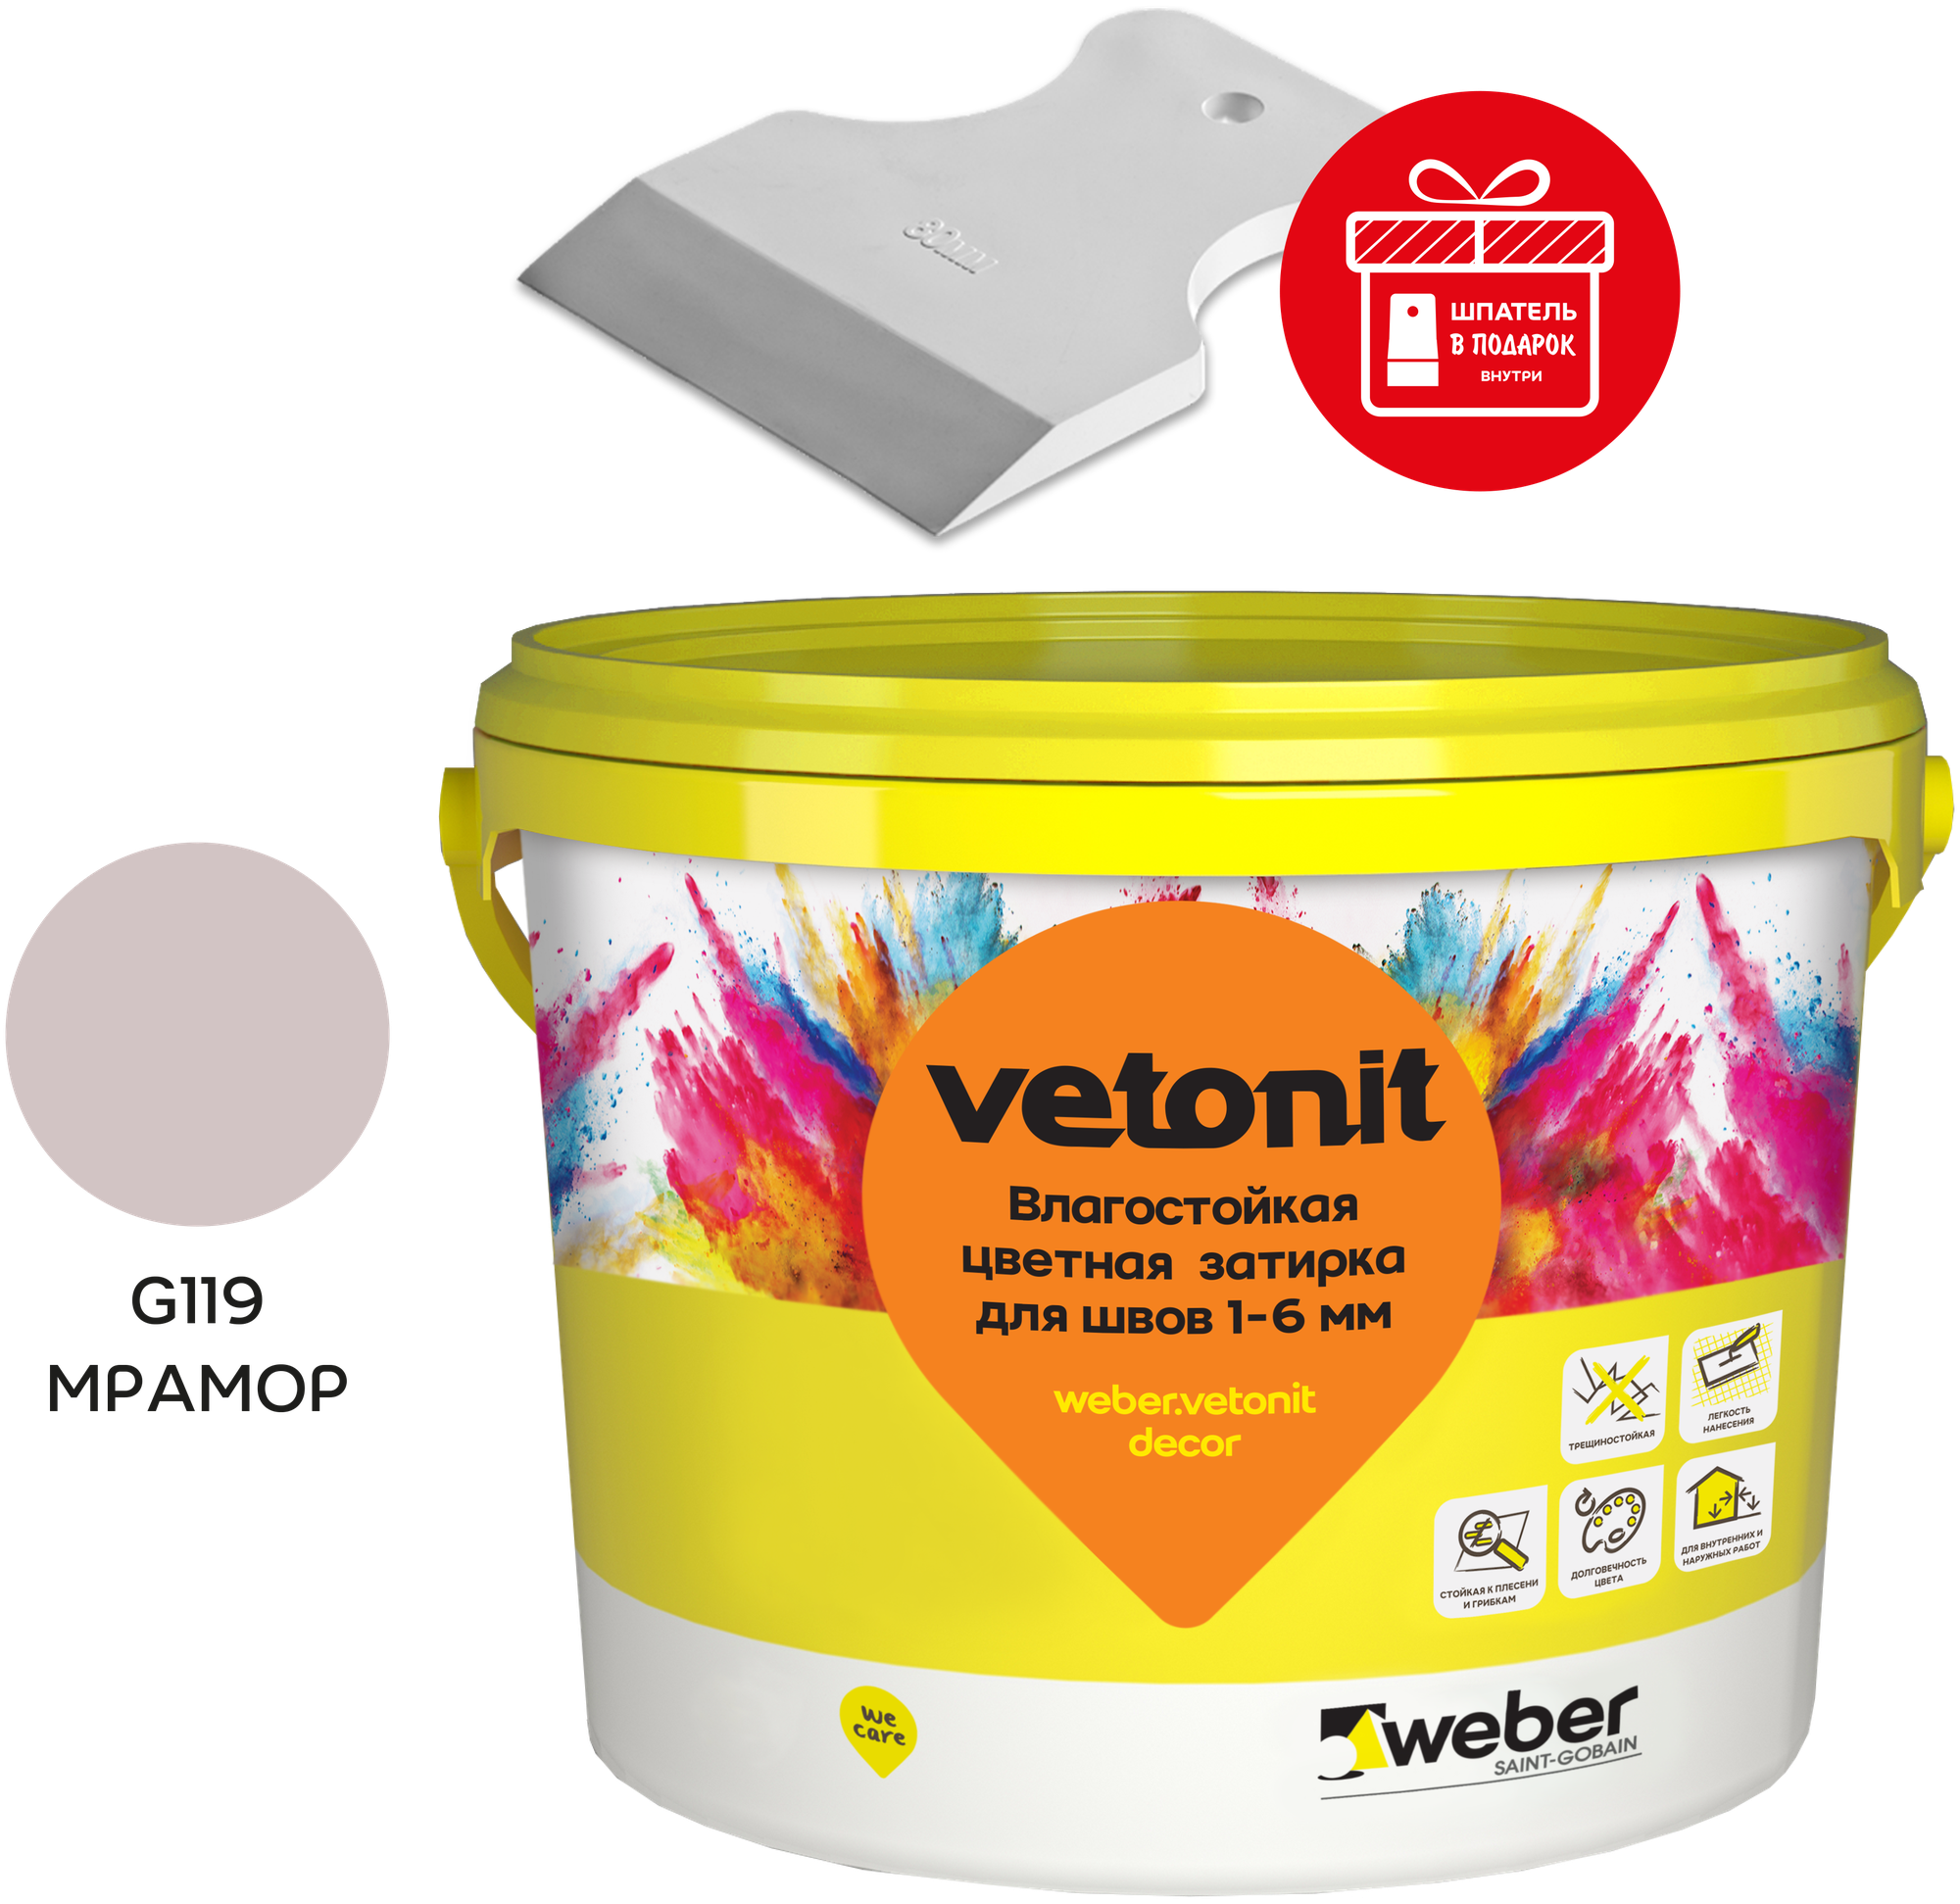 Weber.vetonit decor Влагостойкая цветная затирка для швов 1-6 мм - фотография № 1